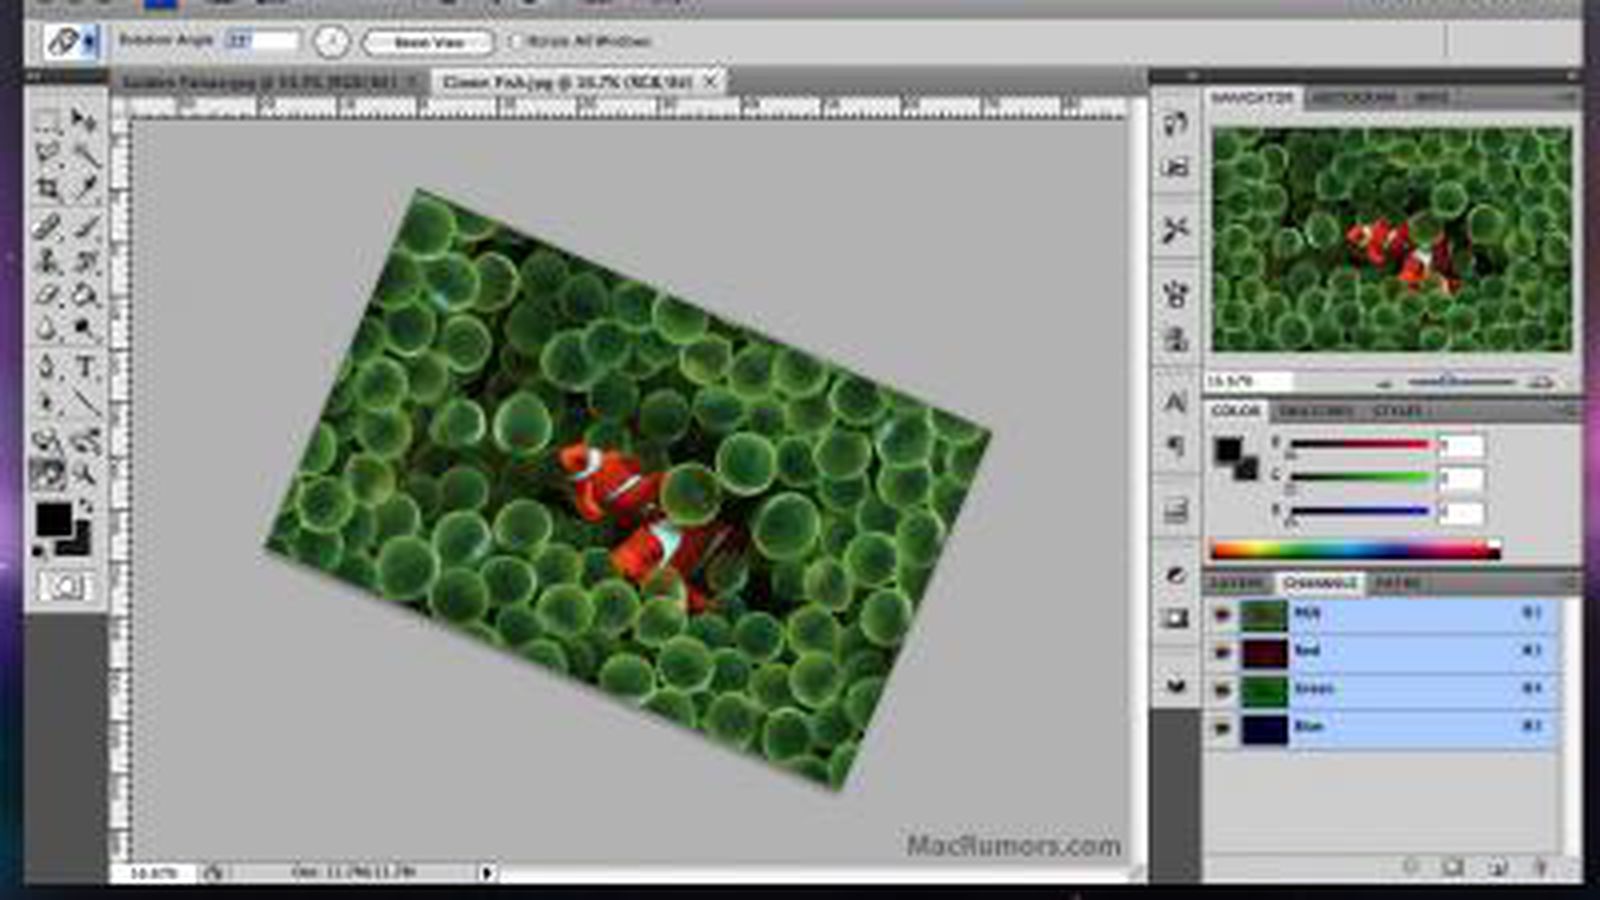 Adobe Photoshop CS4 Interface and Screenshots [Updated] - MacRumors